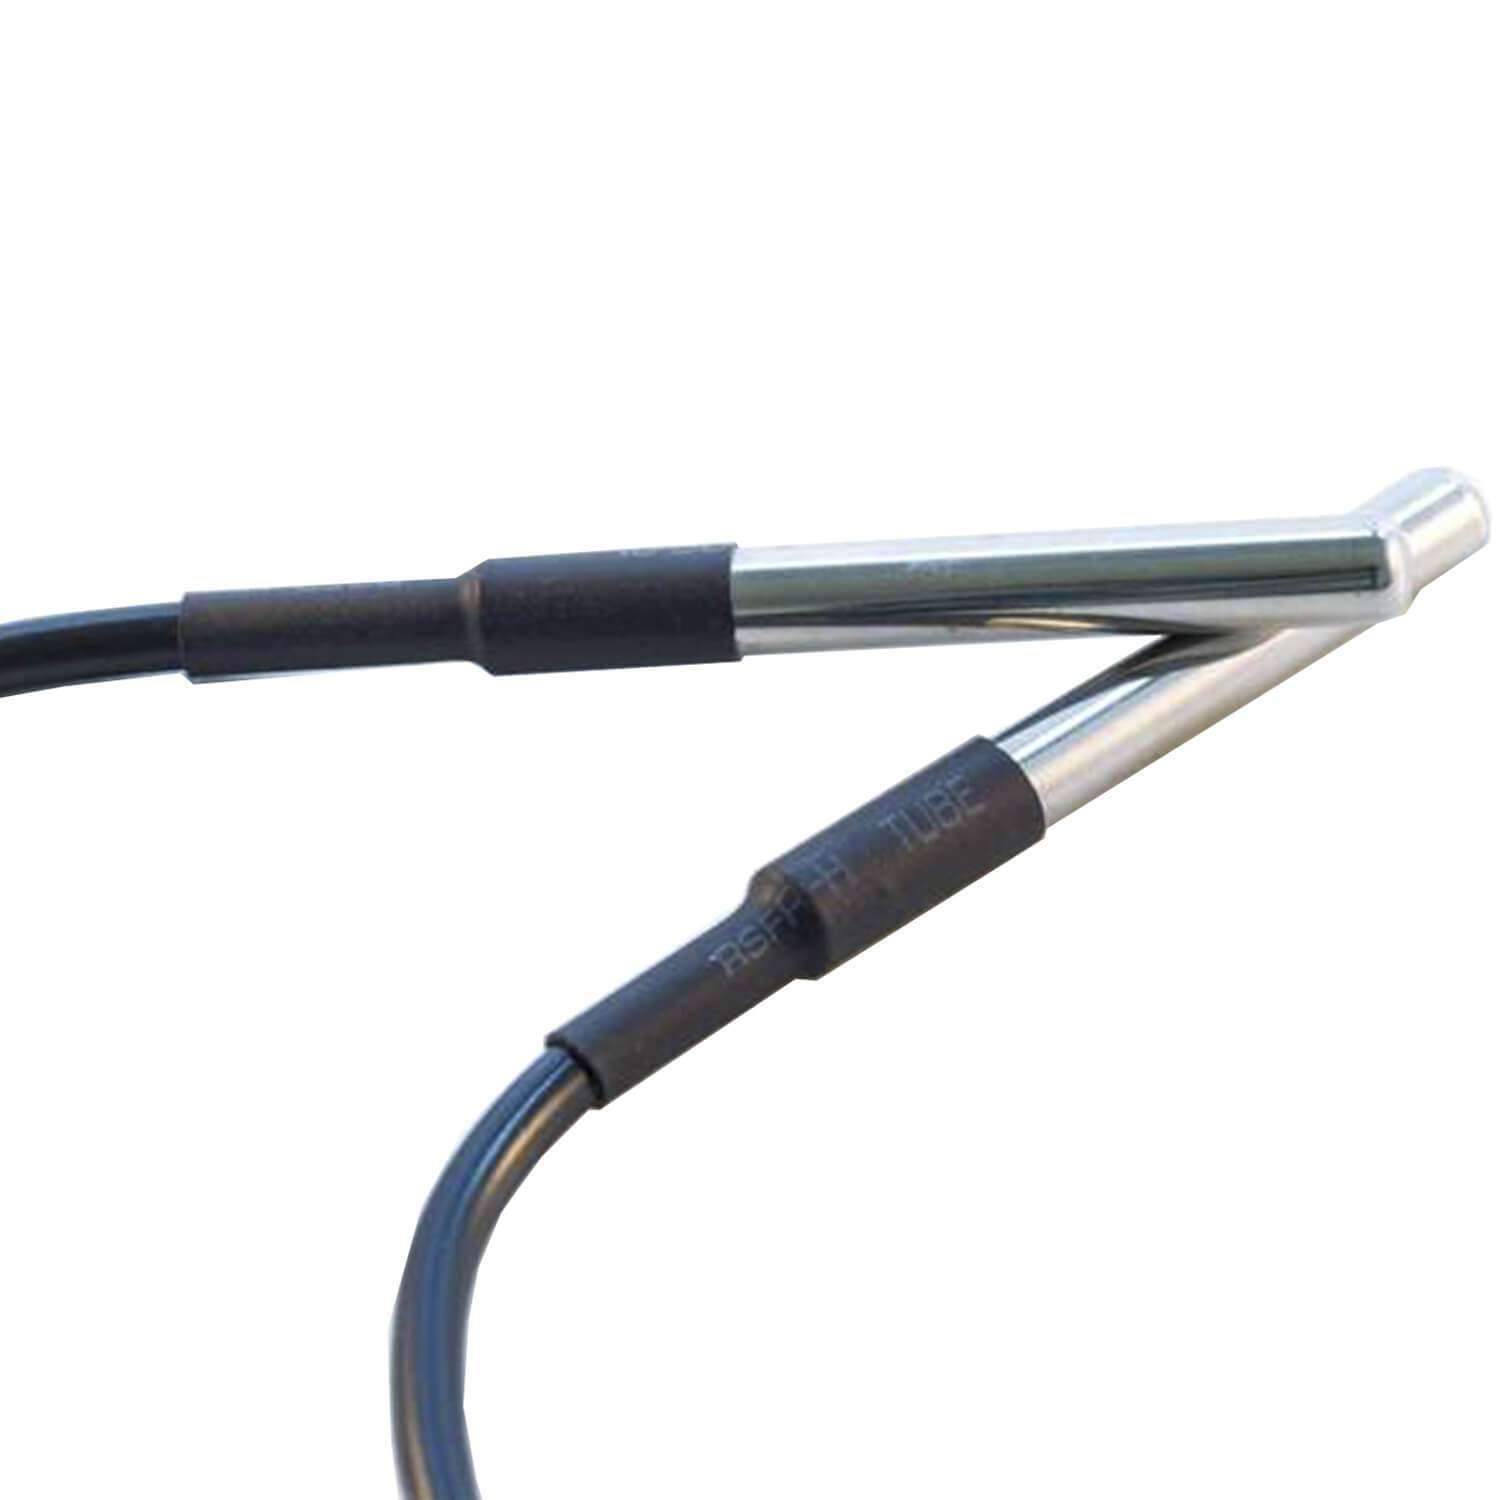 3M Kabel DS18B20 digitaler Edelstahl Temperatursensor Temperaturfühler, wasserdicht kompatibel mit Arduino und Raspberry Pi